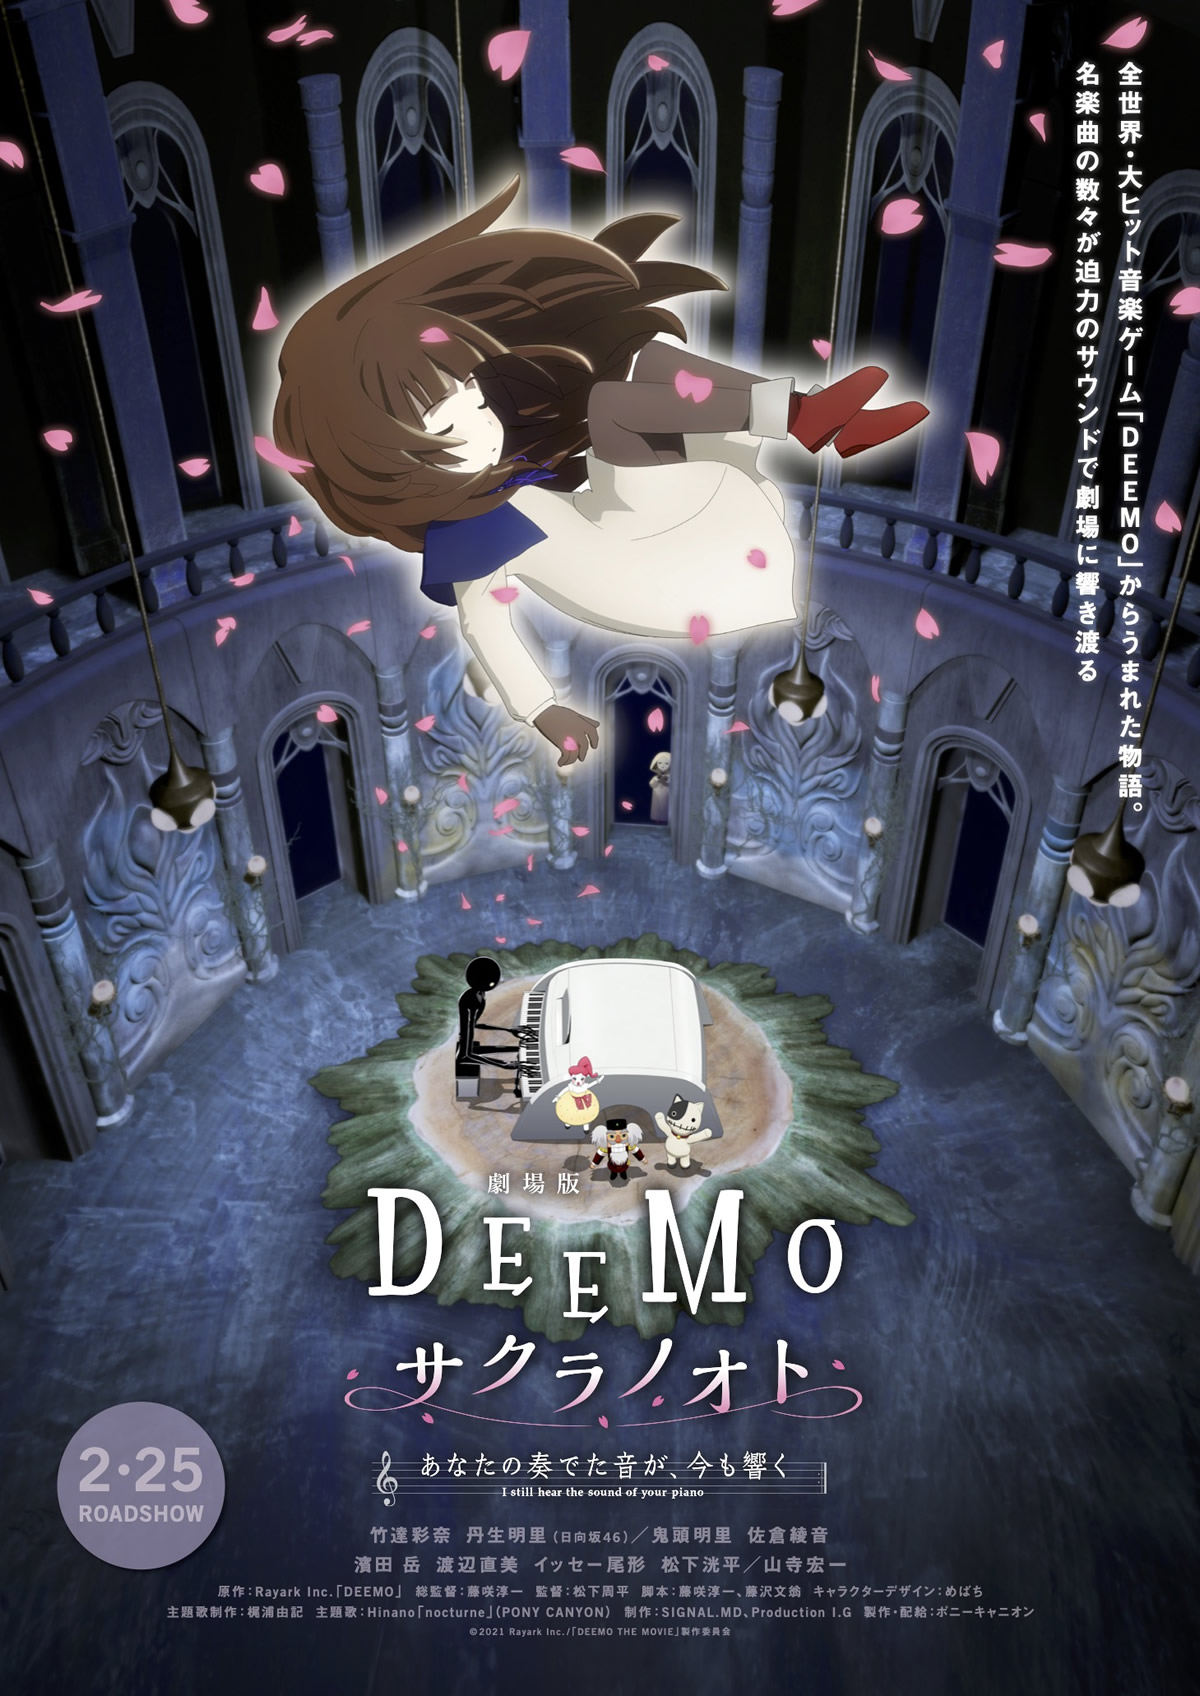 劇場アニメ「DEEMO サクラノオト -あなたの奏でた音が、 今も響く-」タイで2022年3月17日より劇場公開